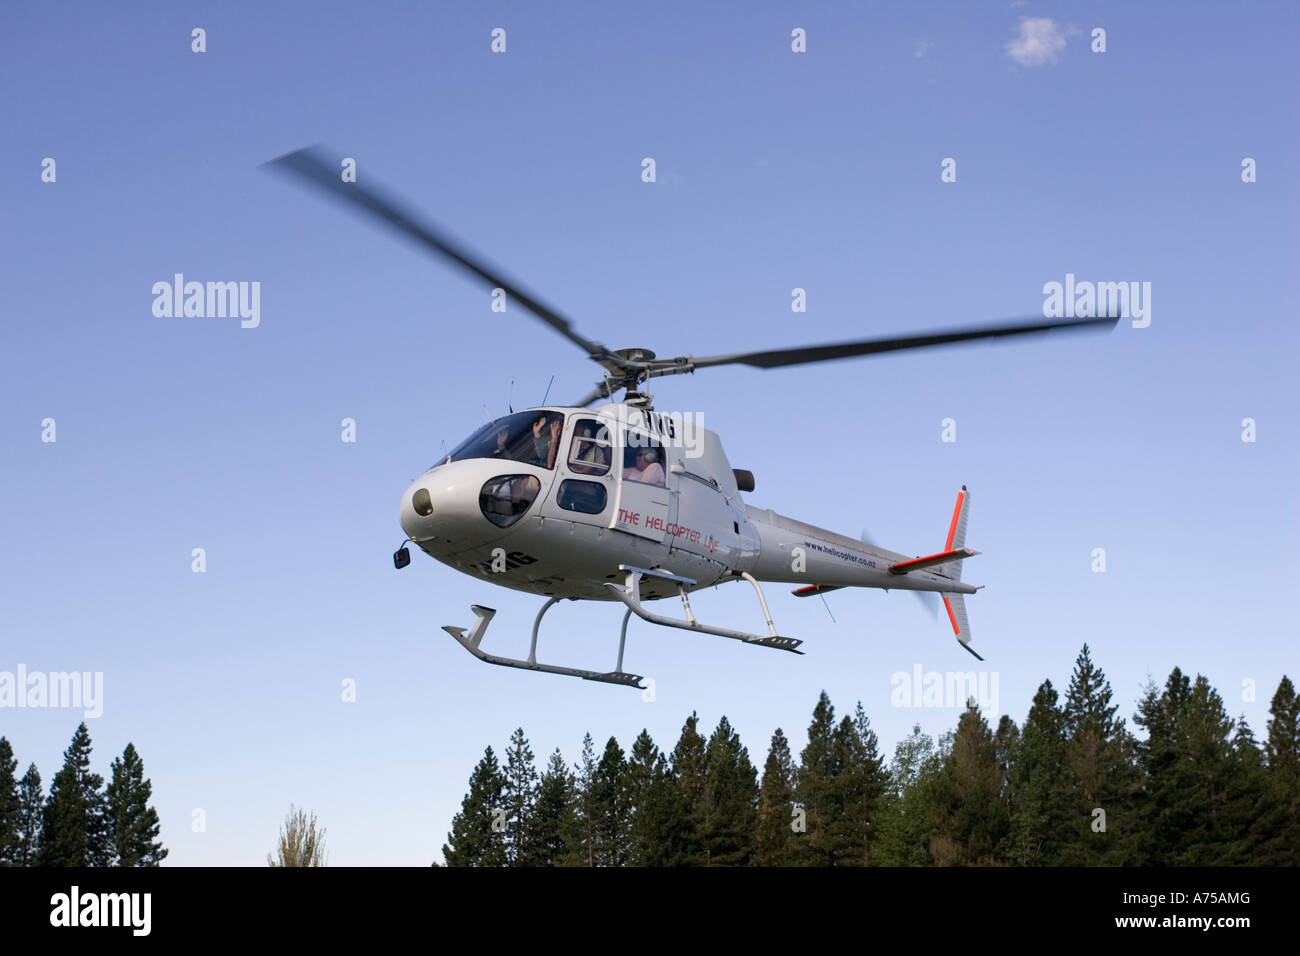 La línea de helicópteros para vuelos turísticos Mount Cook ver desde Twizel, Isla del Sur, Nueva Zelanda Foto de stock